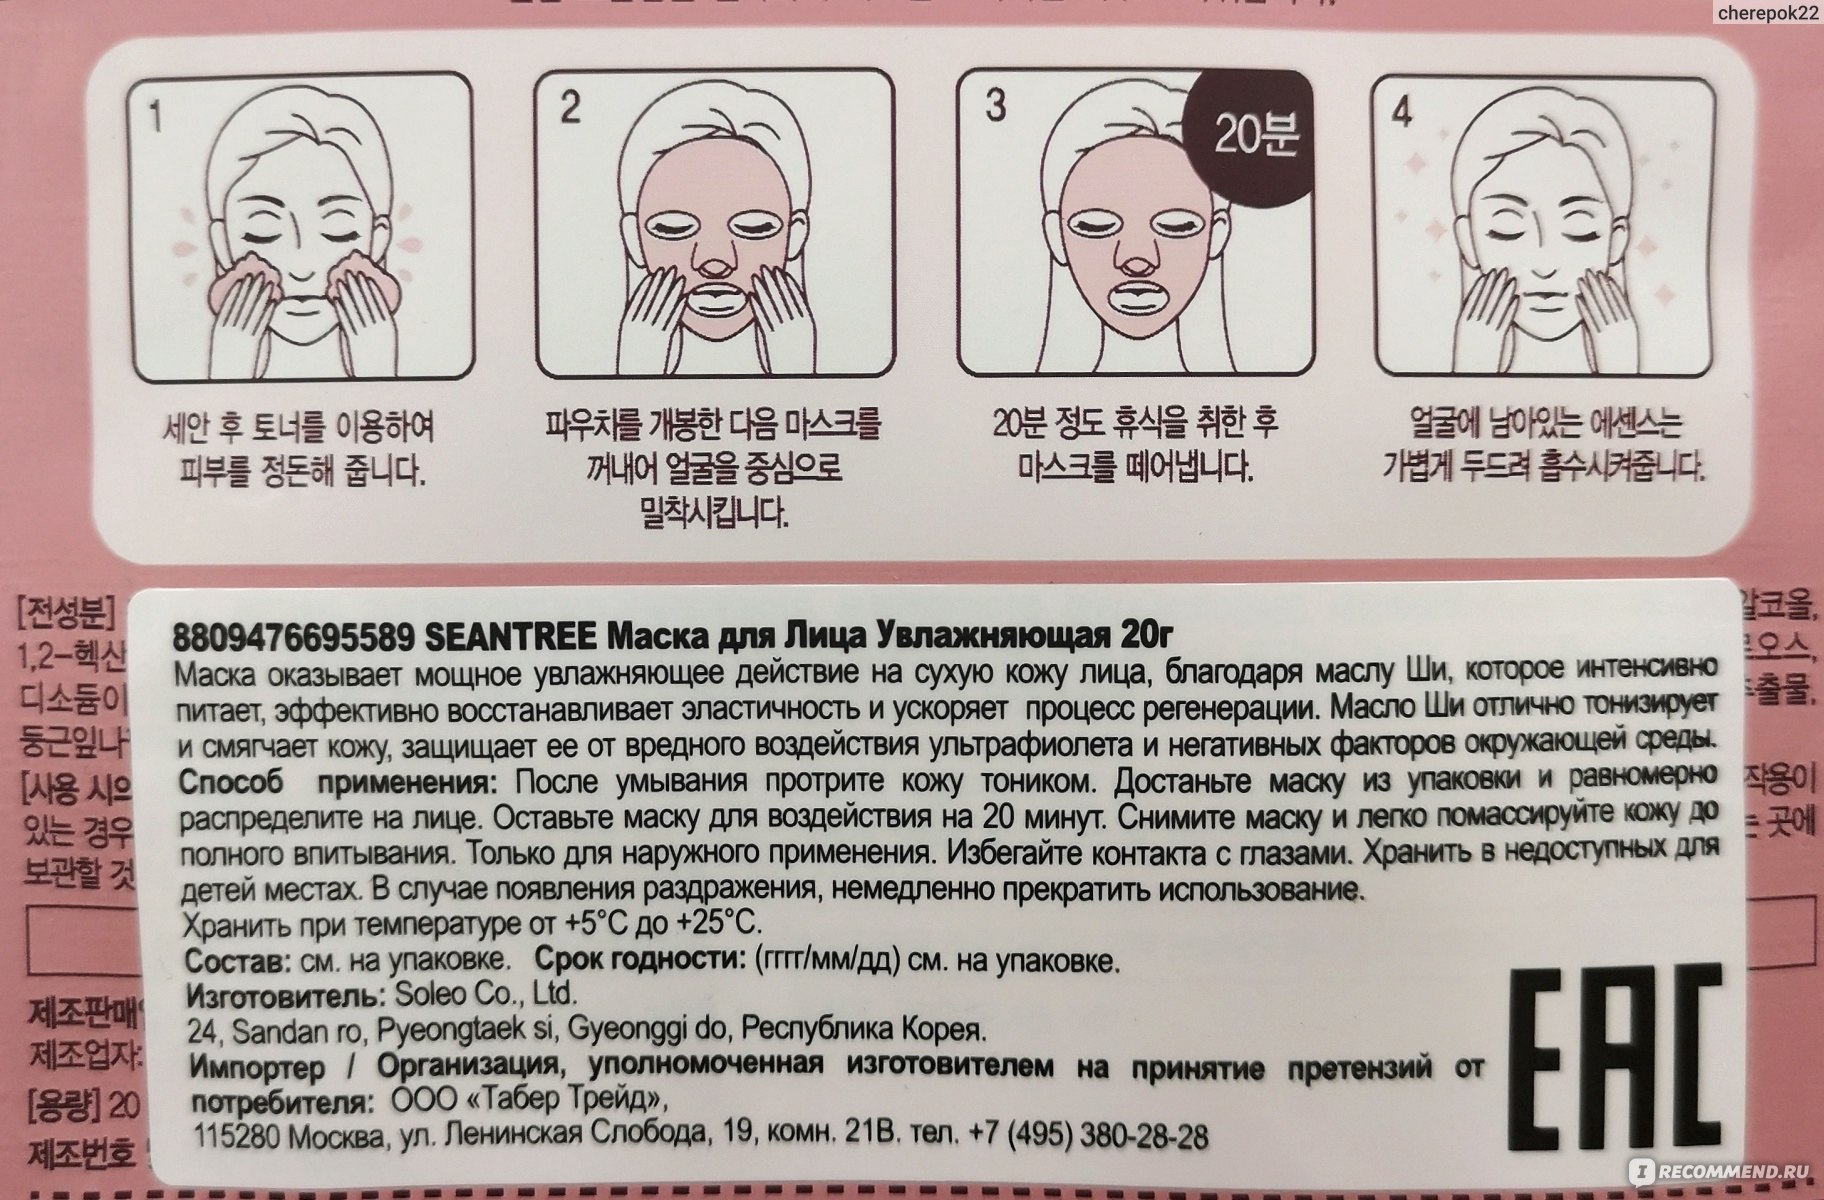 Как использовать корейские маски для лица. Маски для лица тканевые инструкция. Корейская маска для воздействия. Тканевая маска для лица как пользоваться. Тканевая маска для лица как пользоваться правильно корейская.